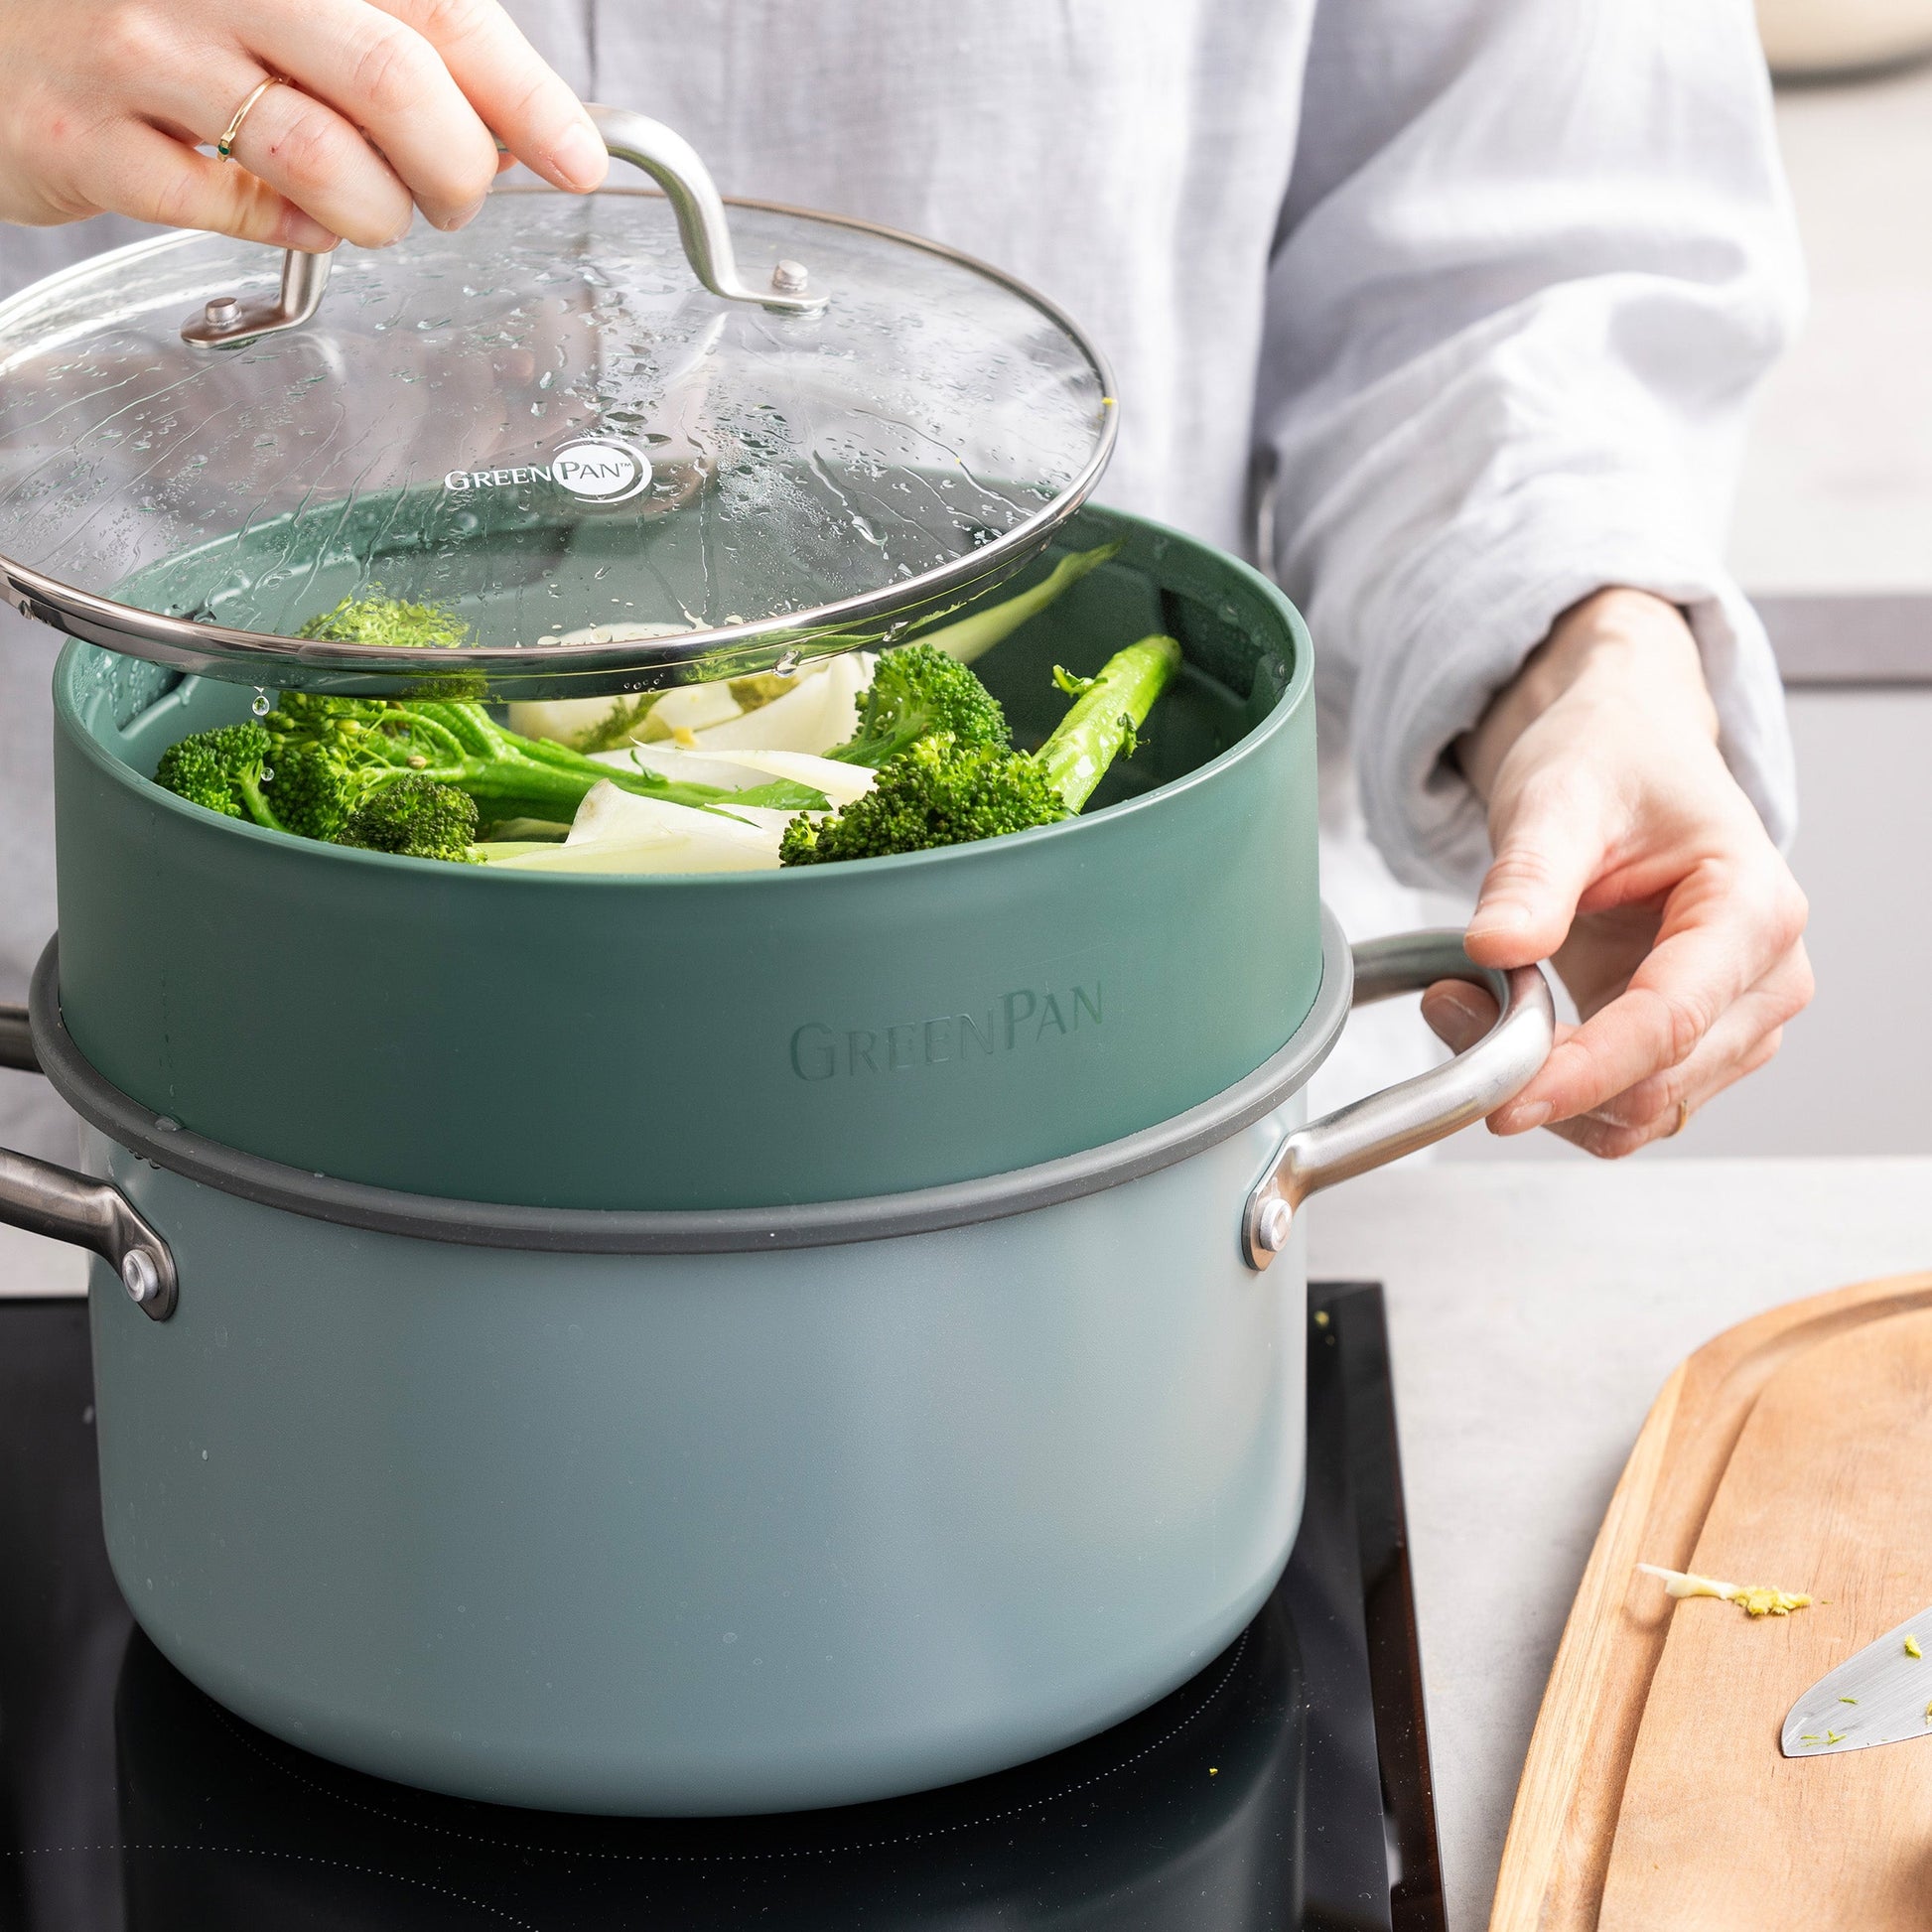 Steamy Groen 24cm met groenten in kookpot